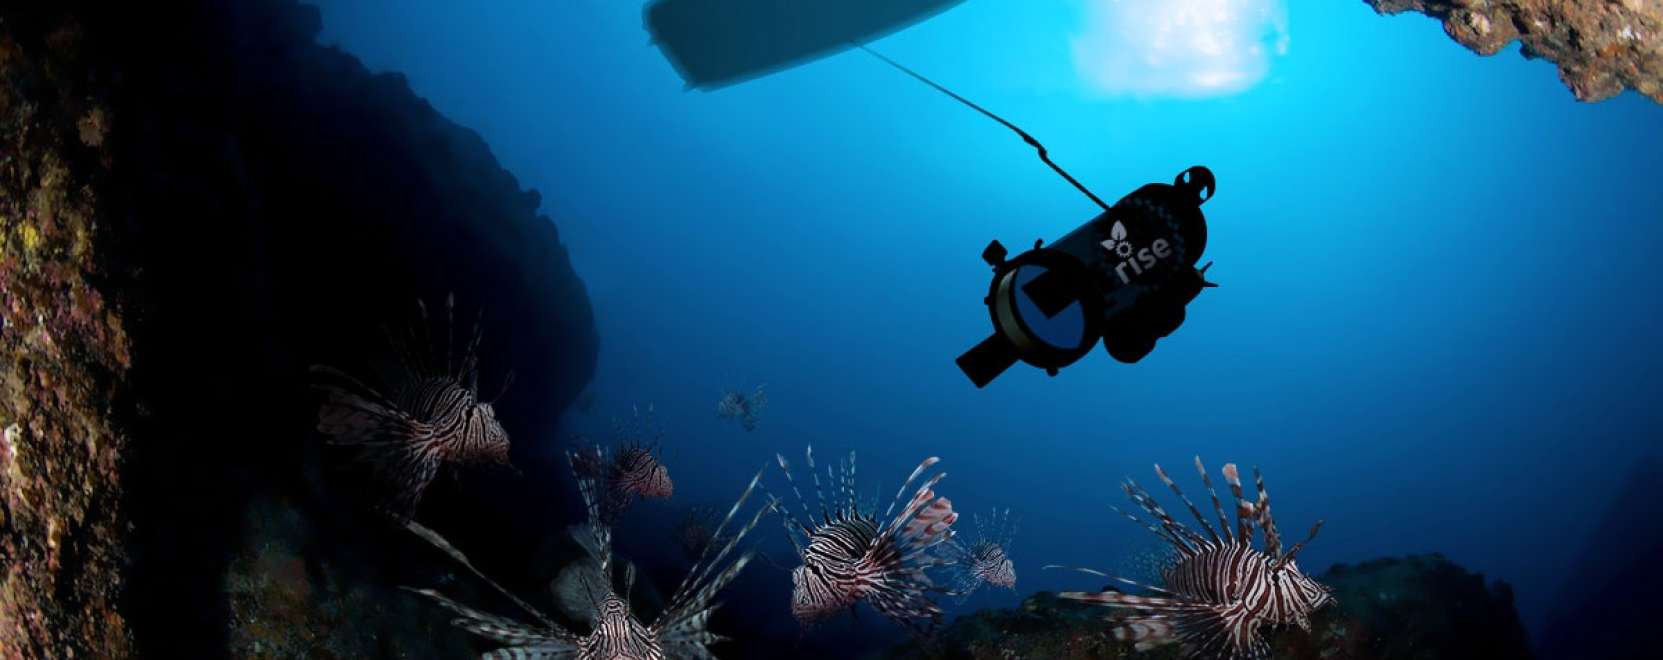 Robot védheti az Atlanti-óceán halait